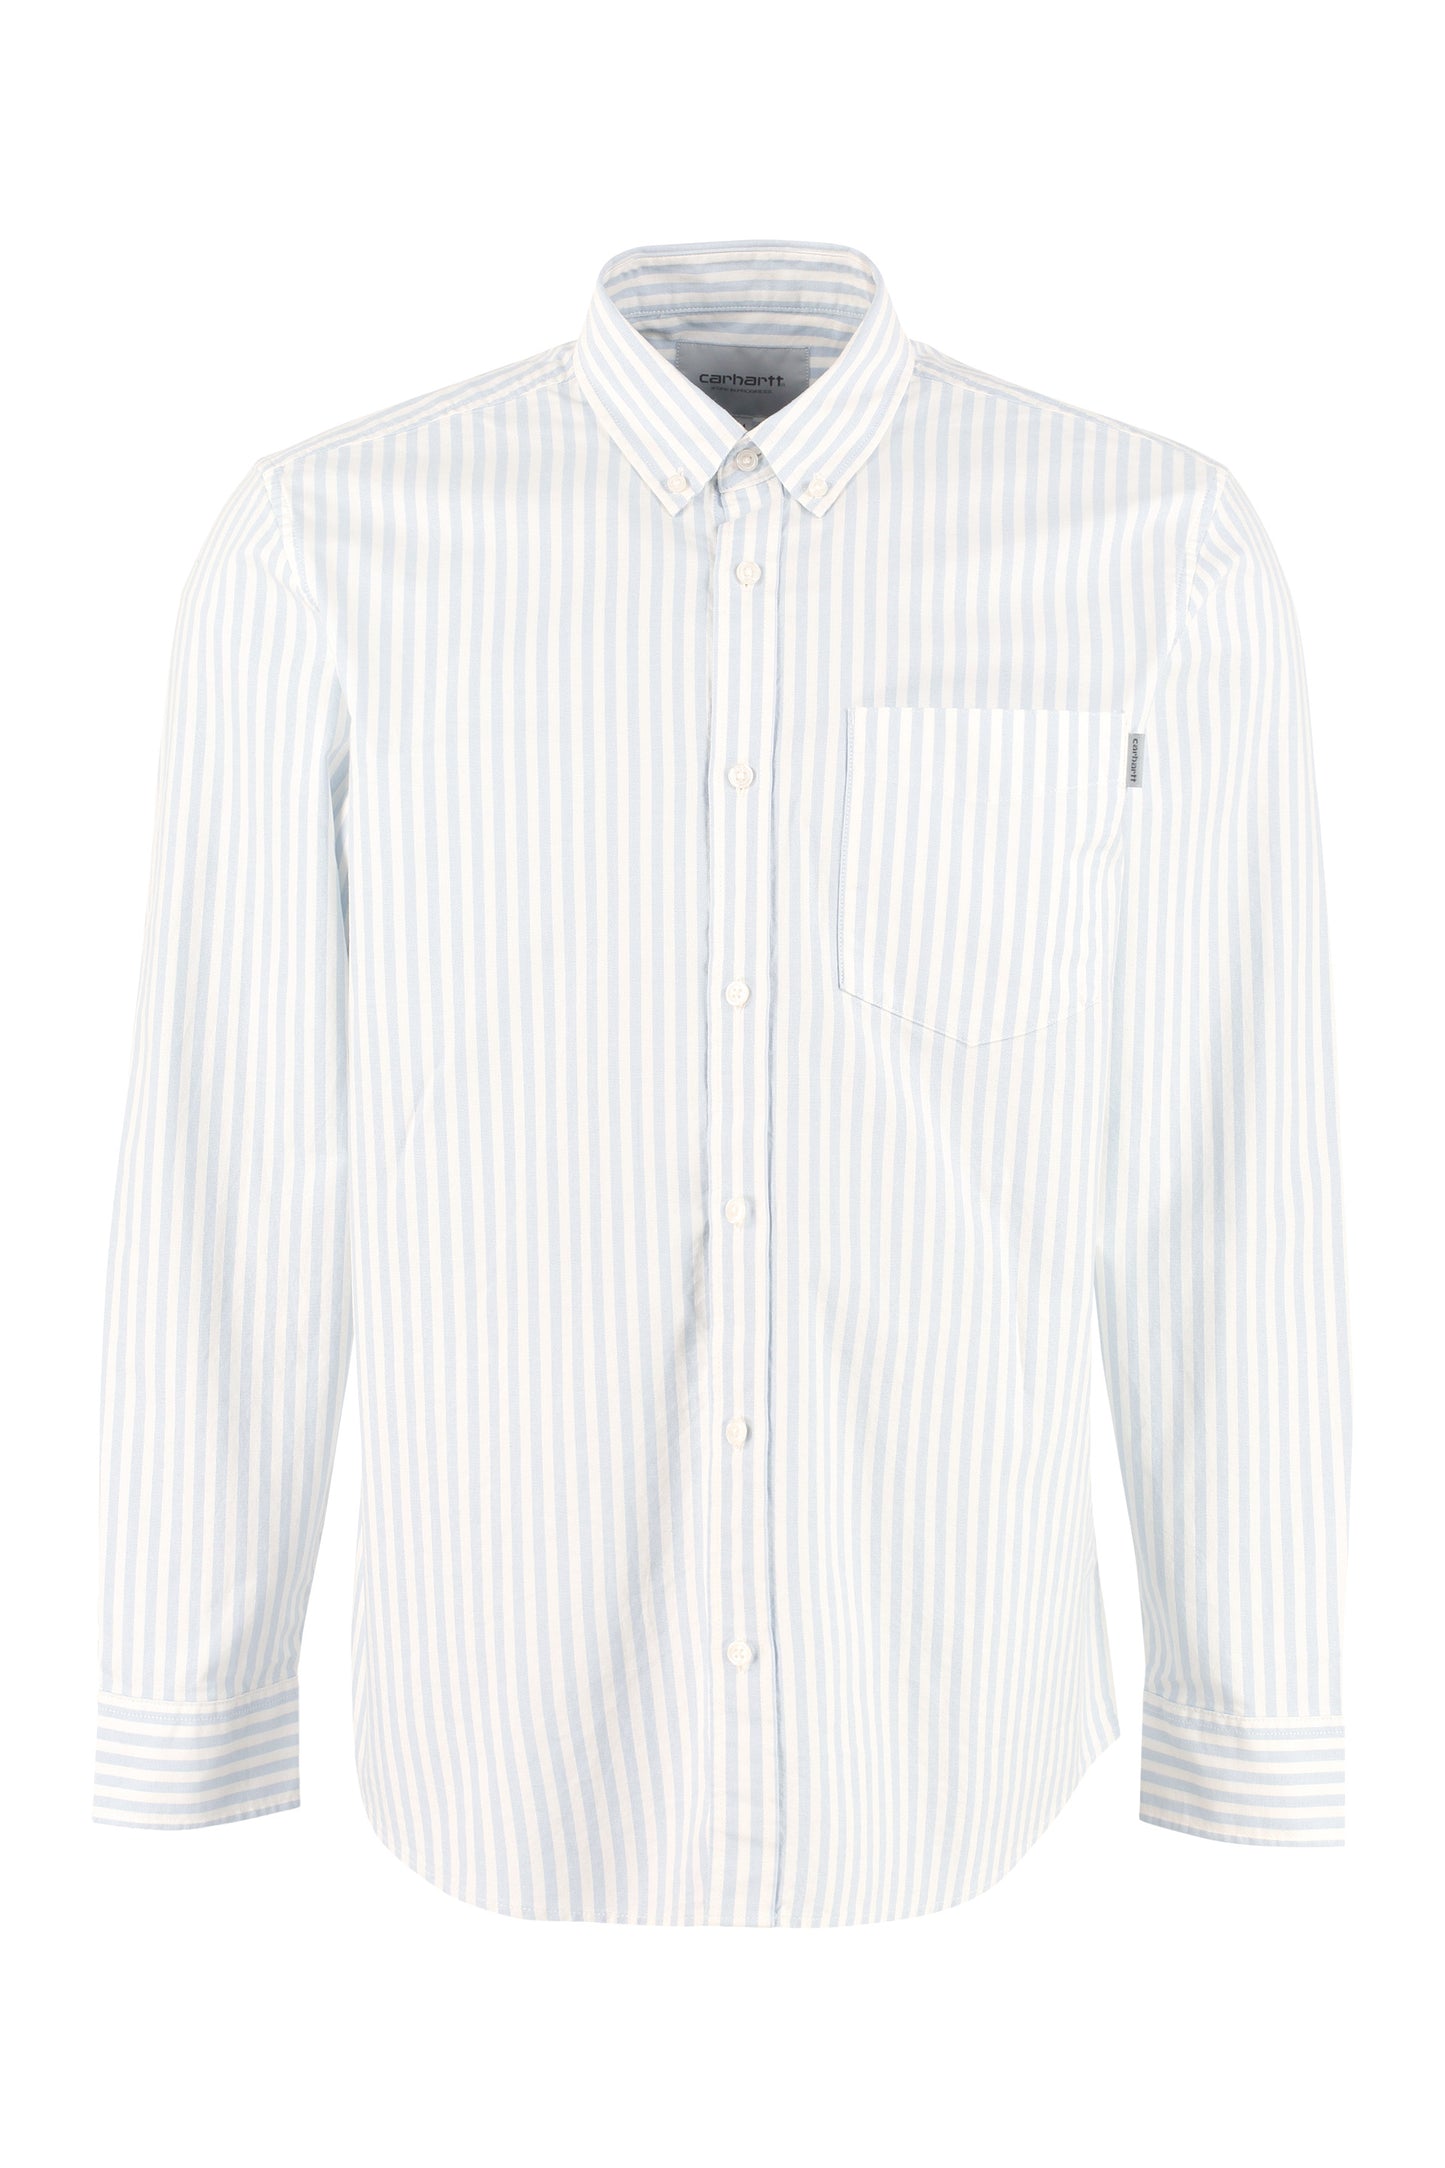 Simon cotton Oxford shirt